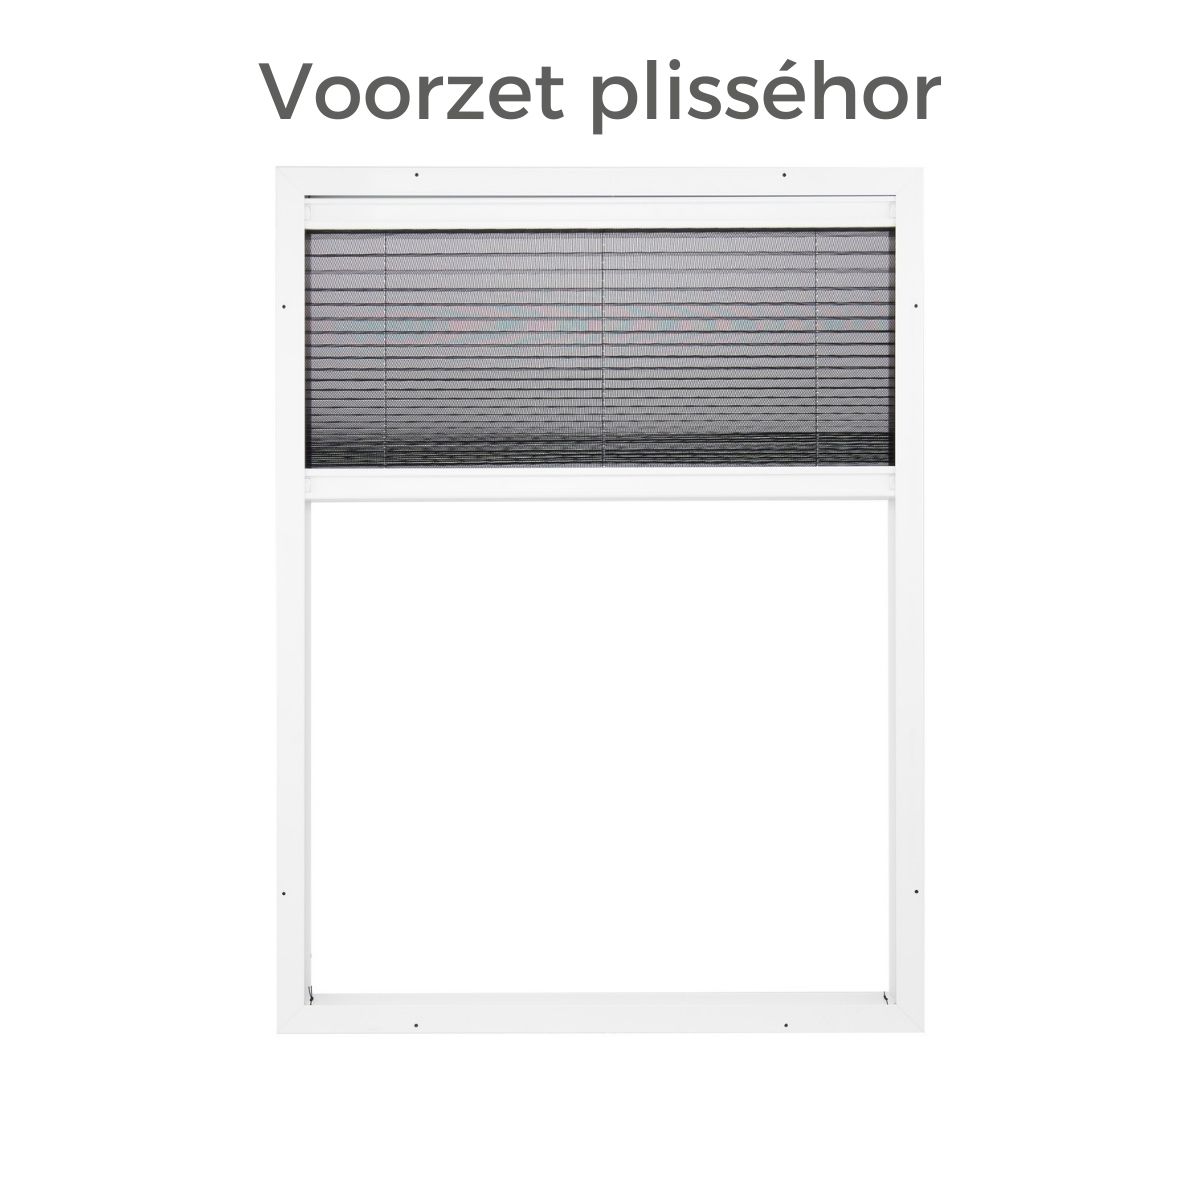 Expliciet enkel veiligheid Voorzet plisséhor - Horrenstunter.nl